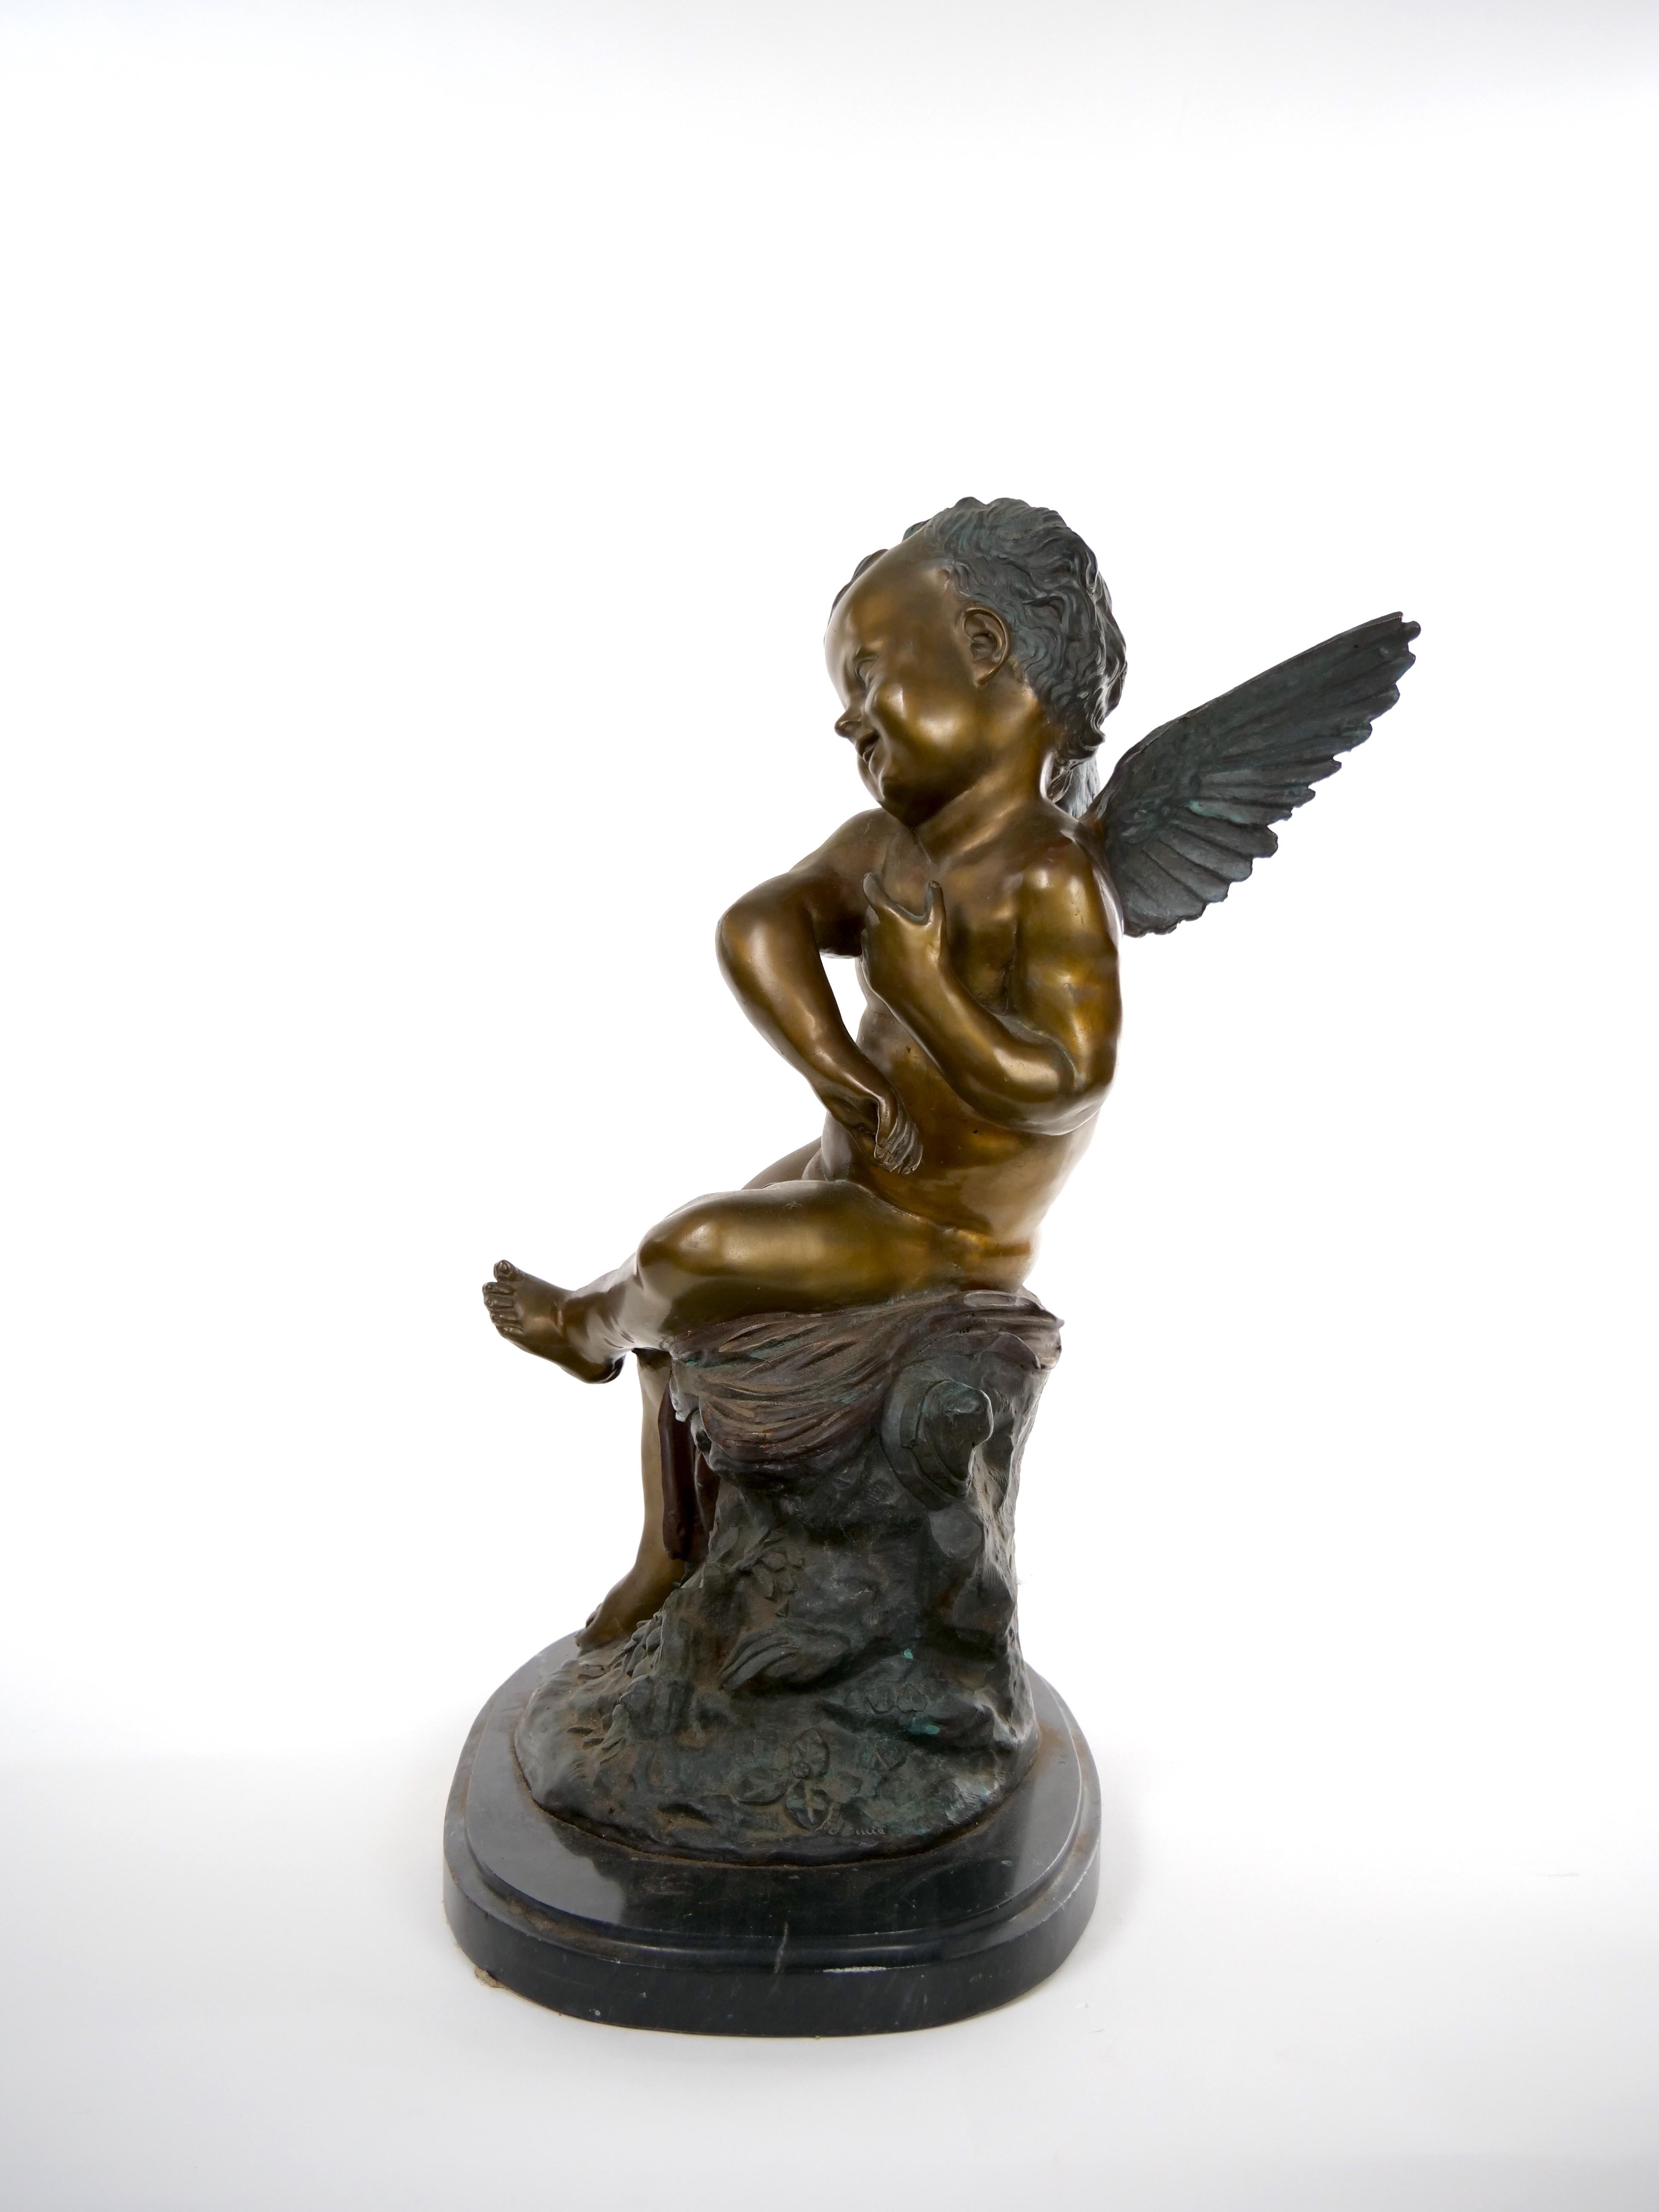 Grande sculpture figurative en bronze patiné de la fin du XIXe siècle, bien exécutée, représentant un Cupidon assis et un putti ailé reposant sur une base ovale en marbre. La pièce est en très bon état. Usure mineure et petit éclat à la base en